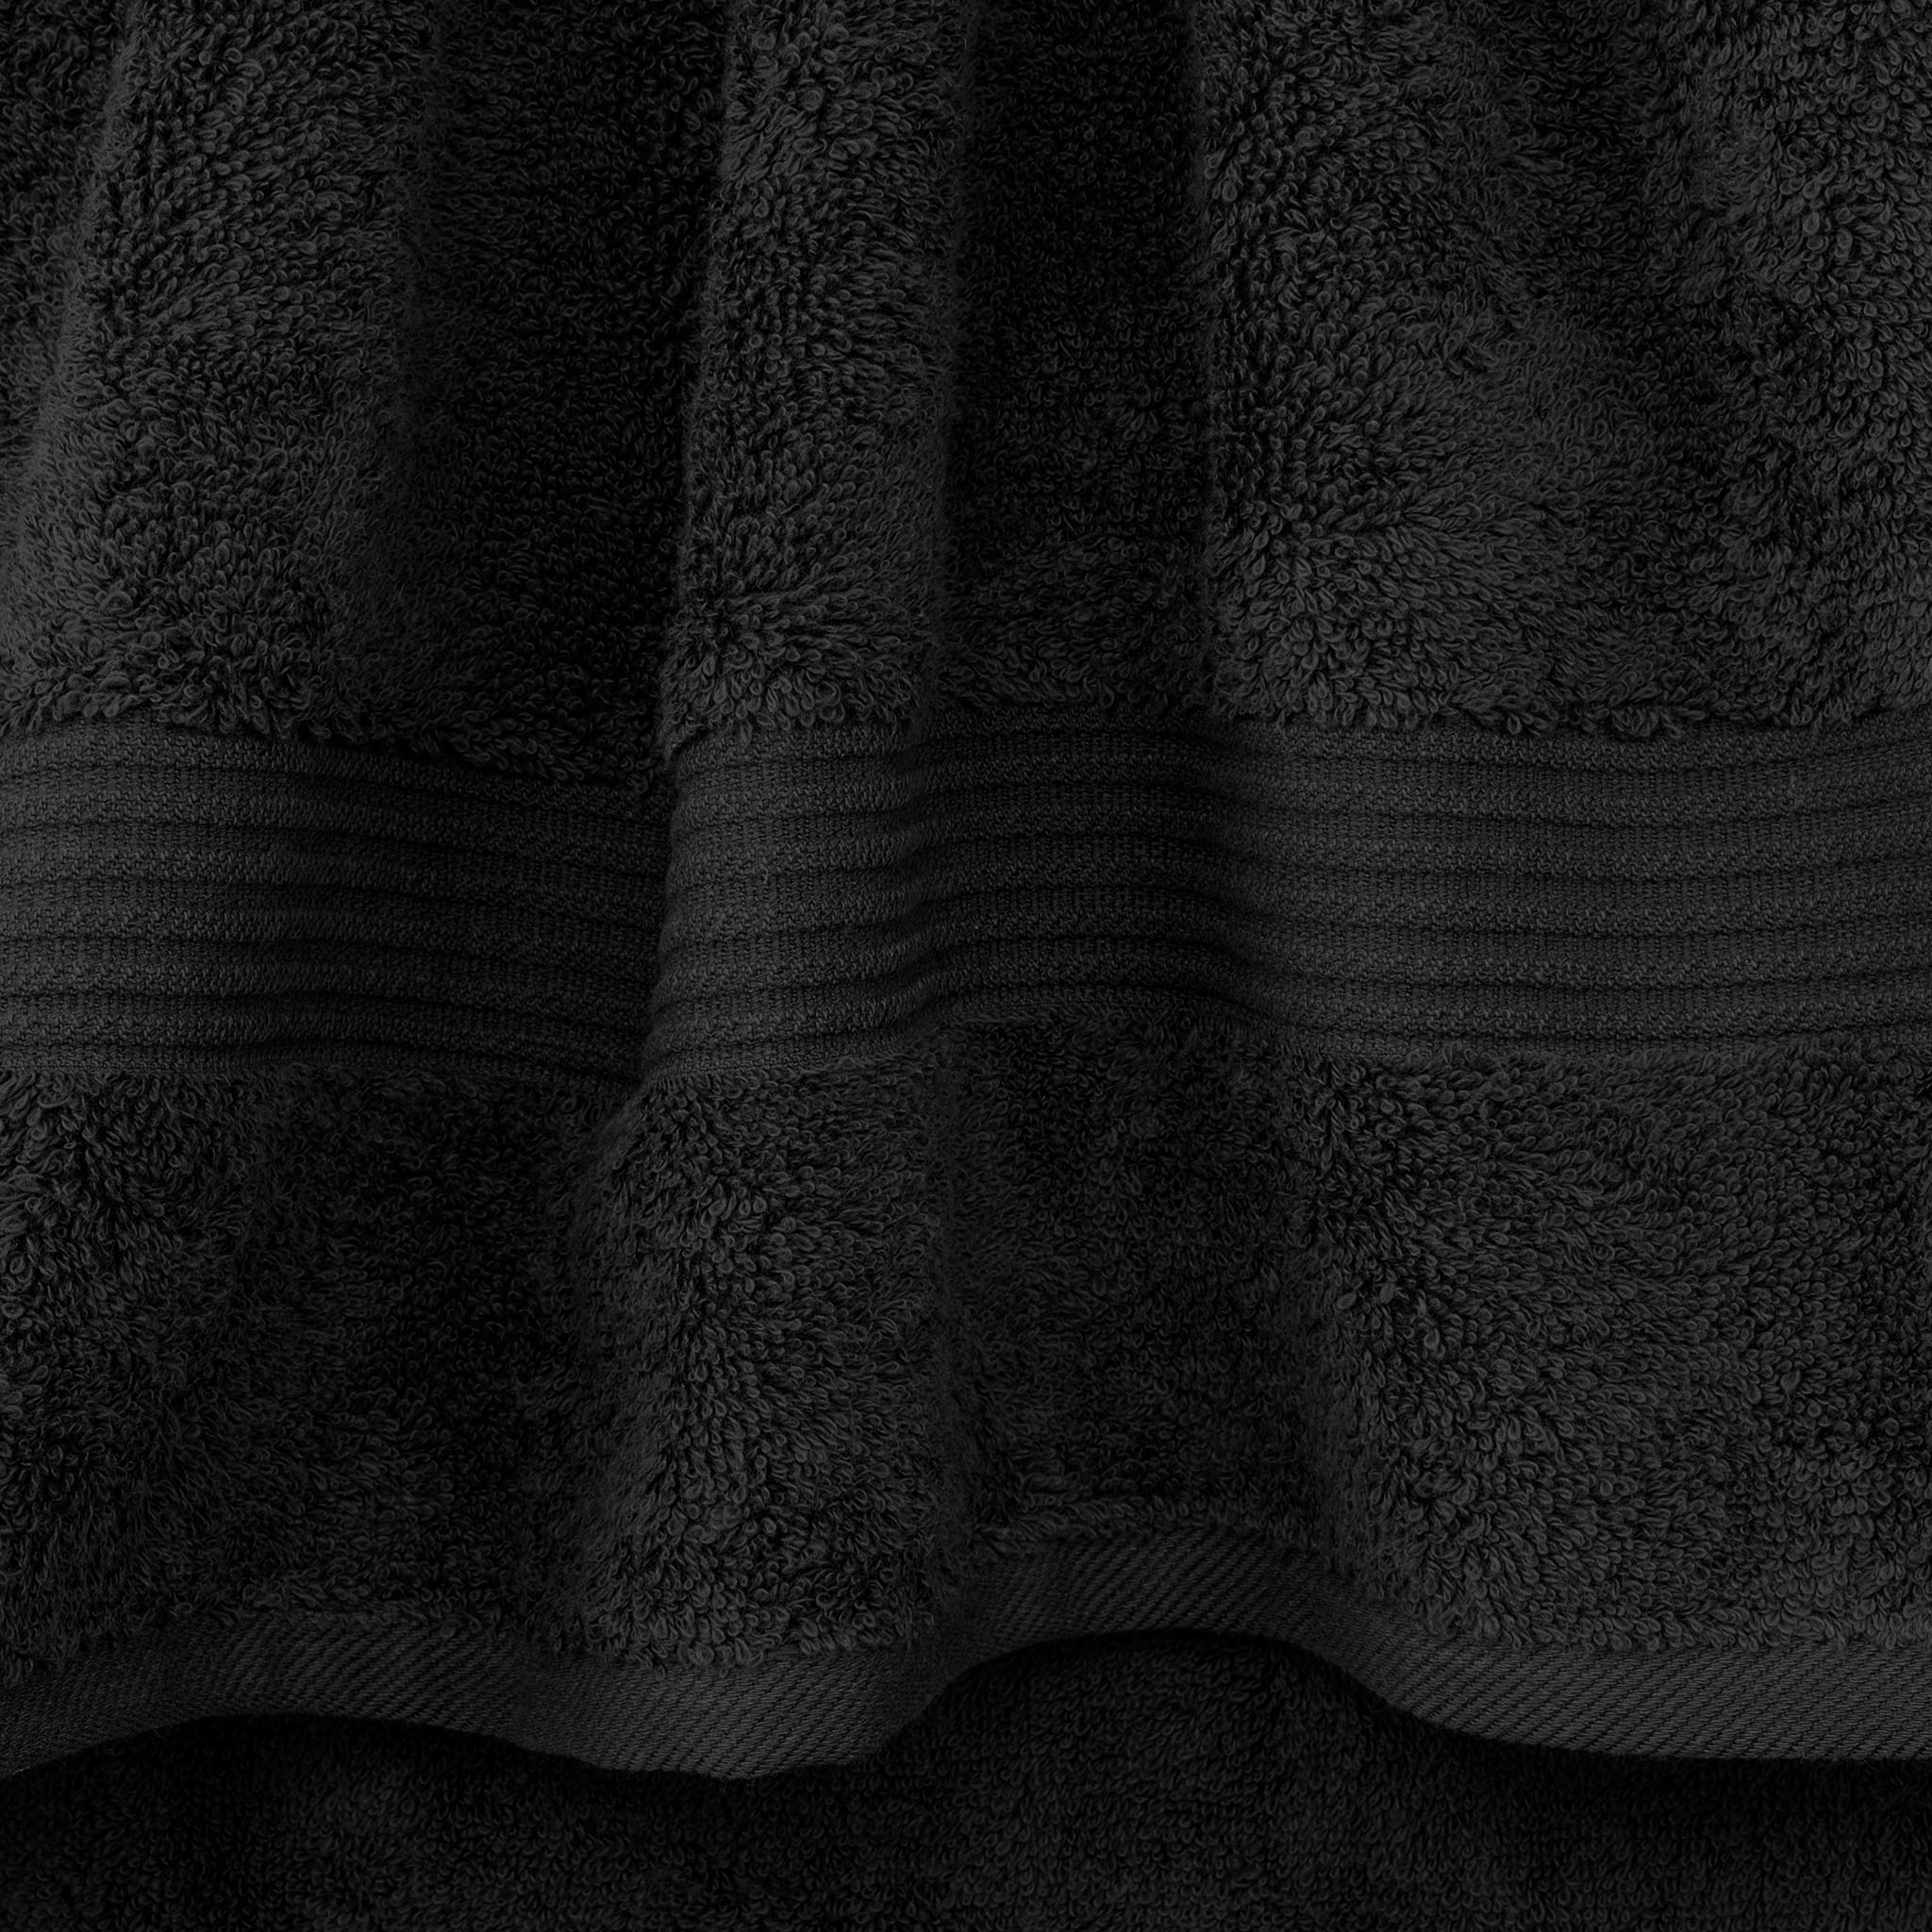 American Soft Linen Bekos 100% Cotton Turkish Towels, 4 Piece Bath Towel Set -black-03